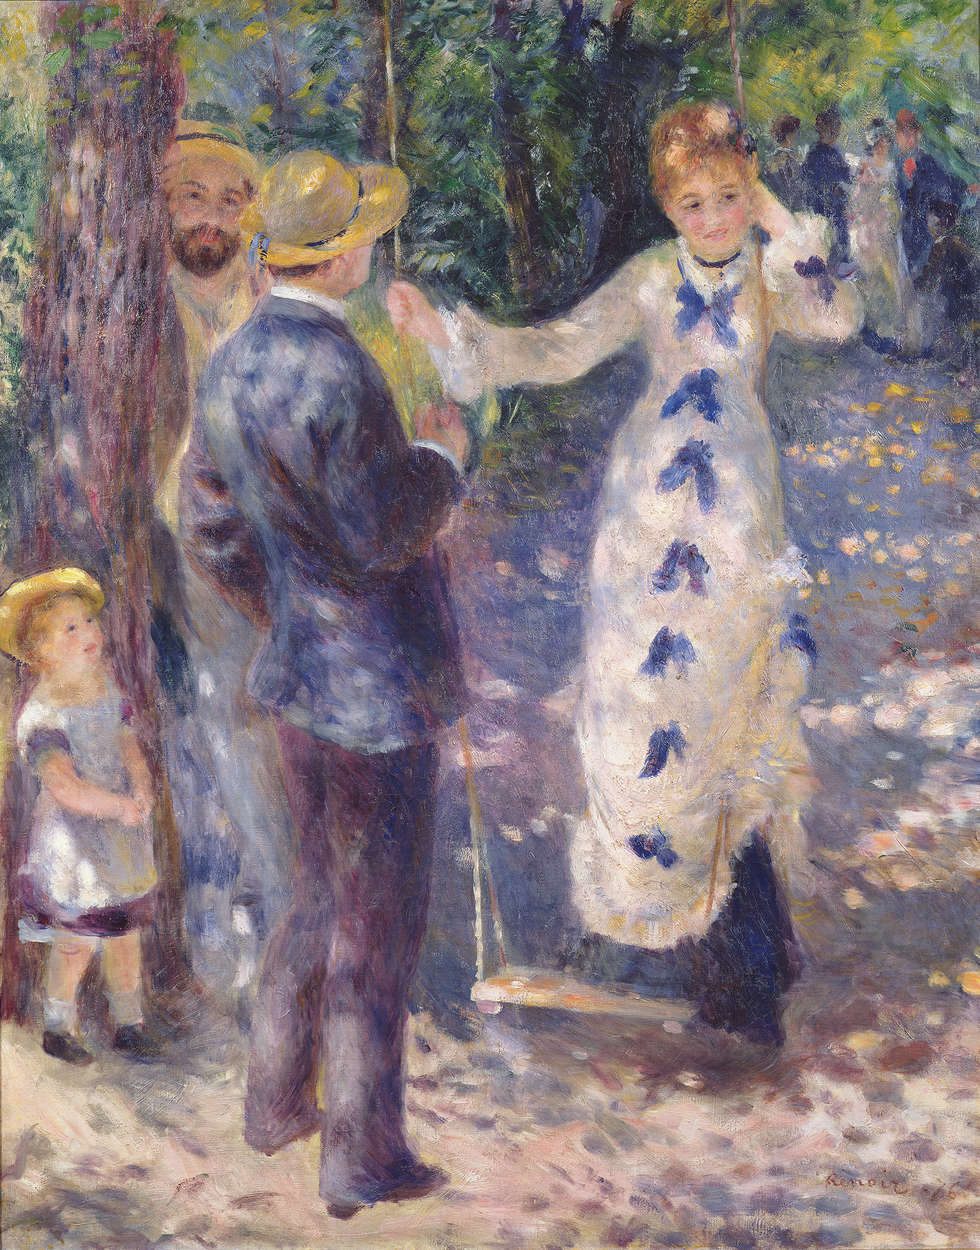             Mural "En el columpio" de Pierre Auguste Renoir
        